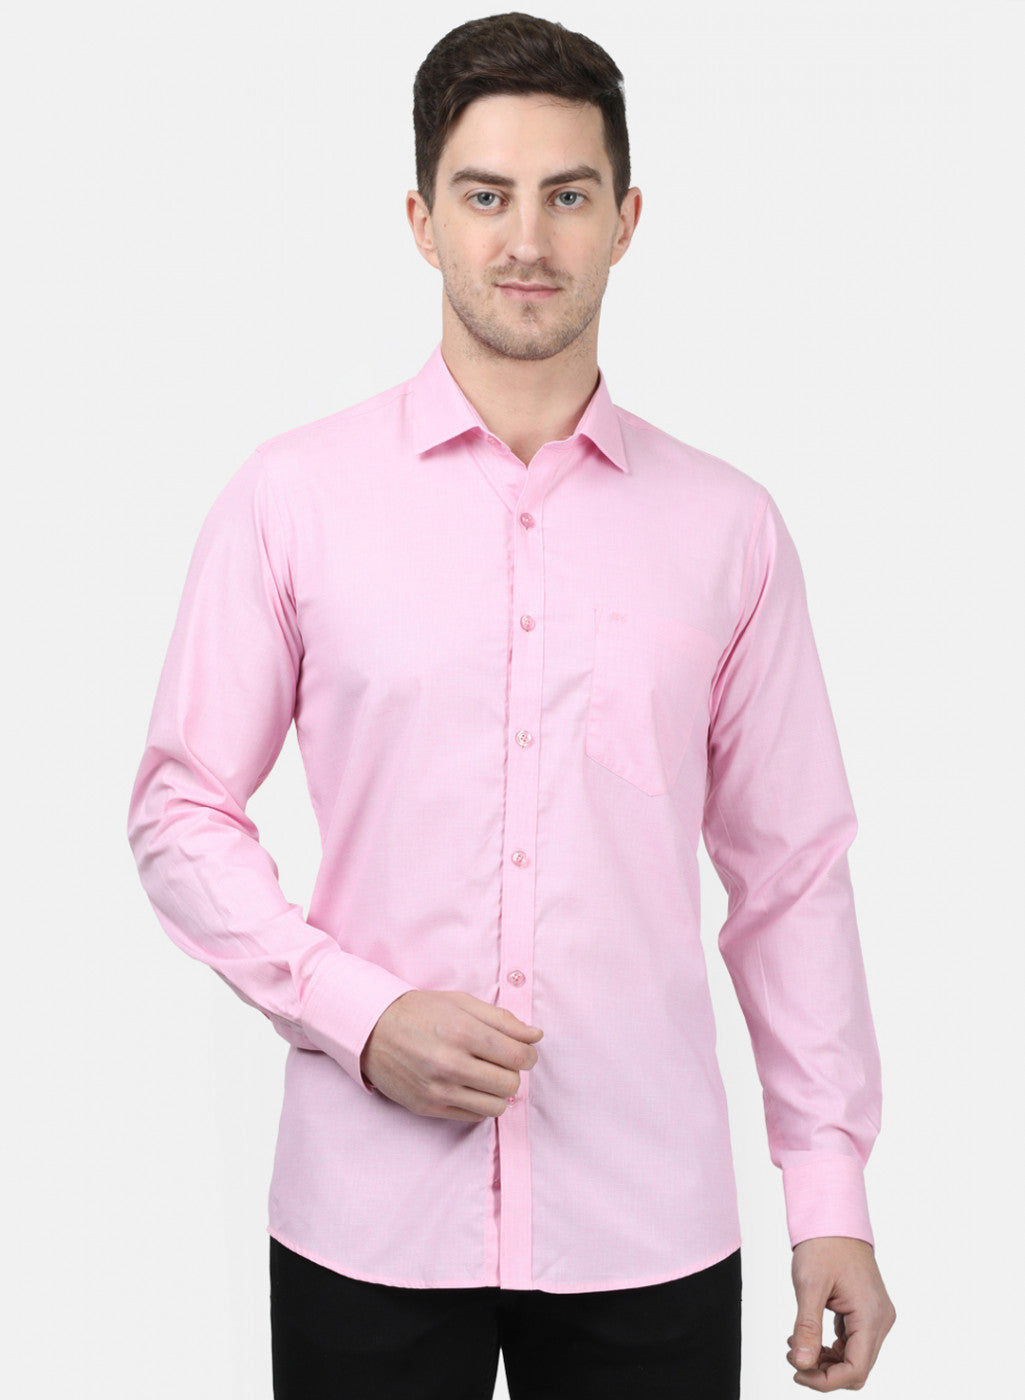 Mens Pink Solid Shirts